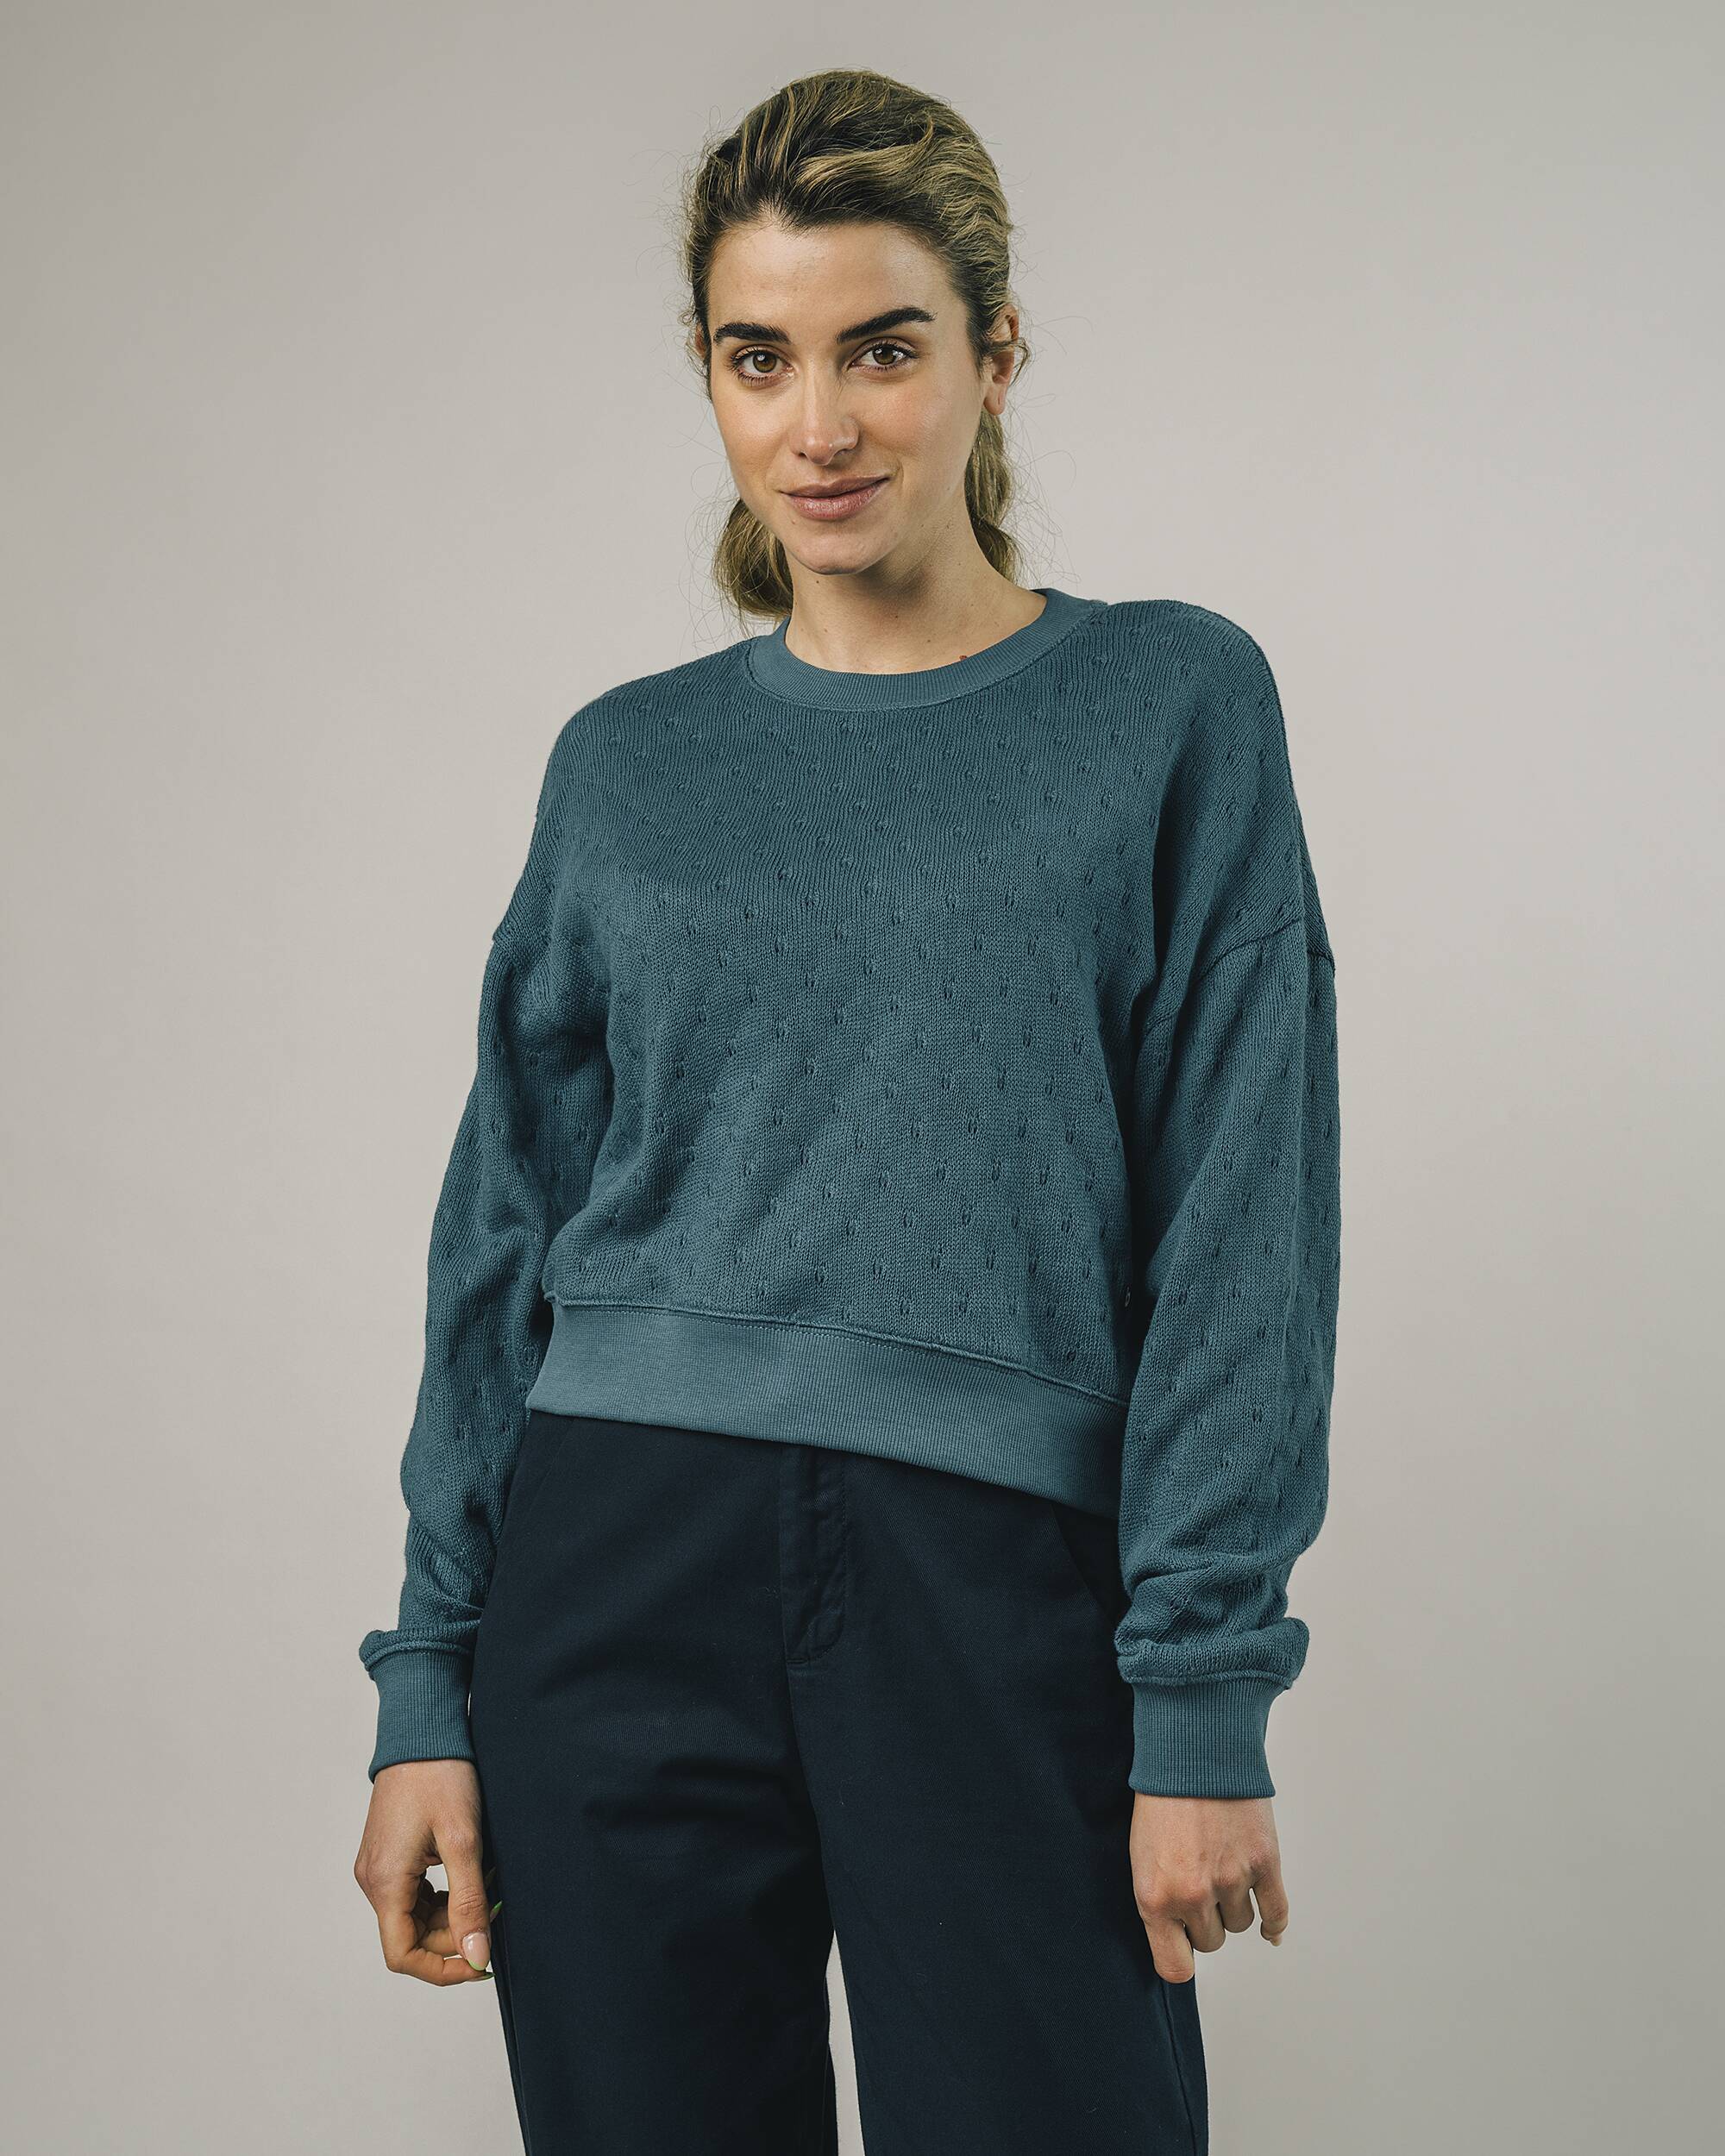 Oversized Sweater "Lace" in blau / türkis aus 100% Bio - Baumwolle von Brava Fabrics